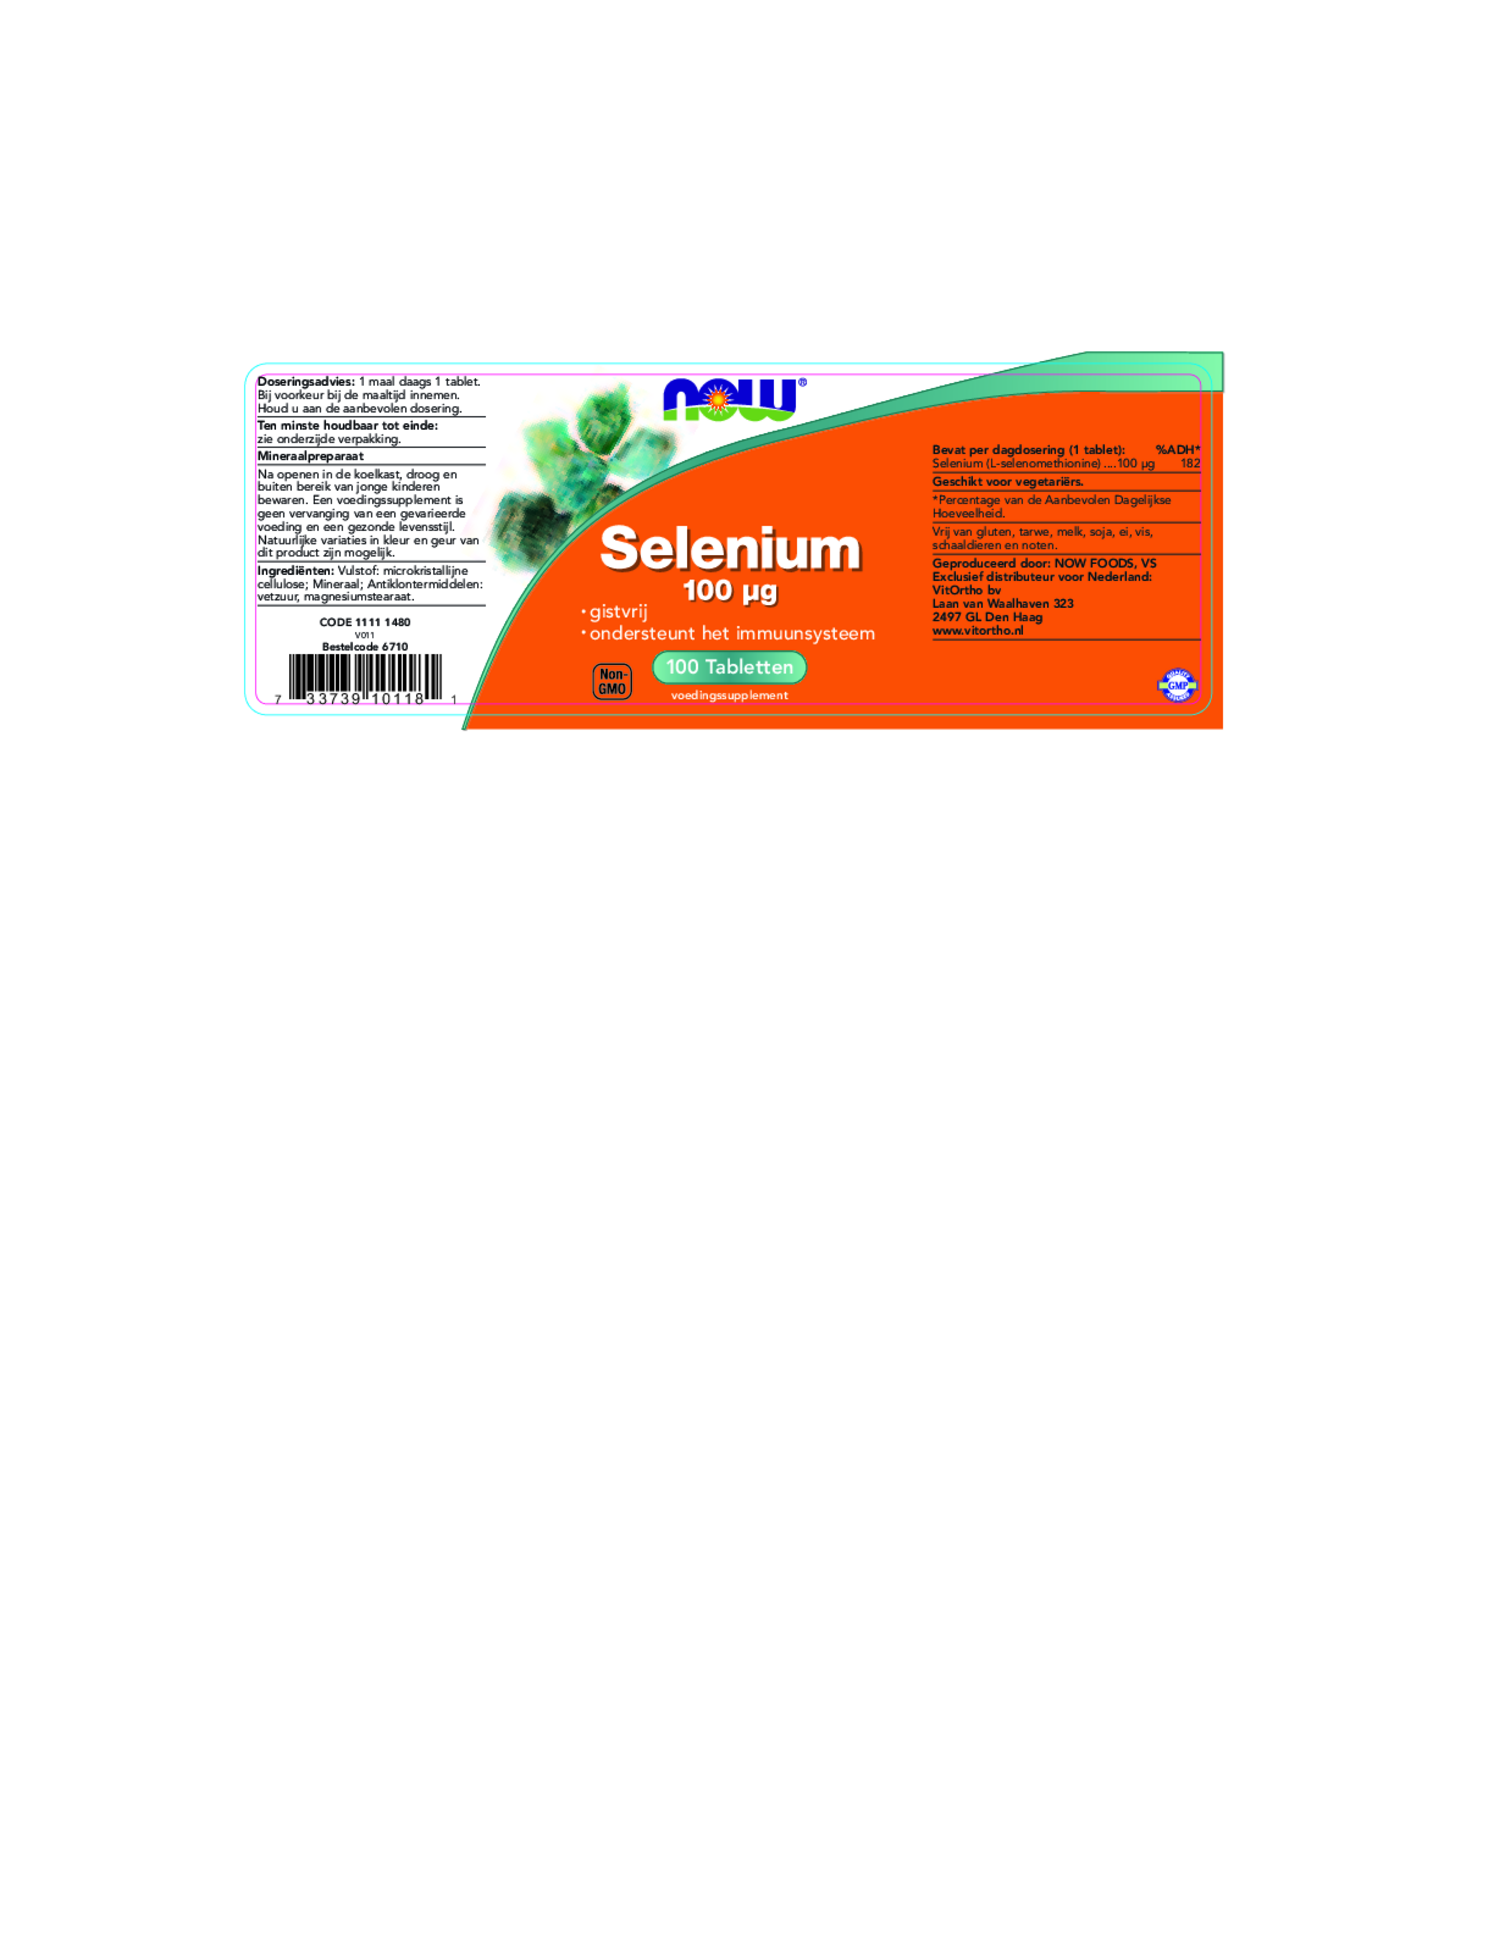 Selenium 100 μg Tabletten afbeelding van document #1, etiket